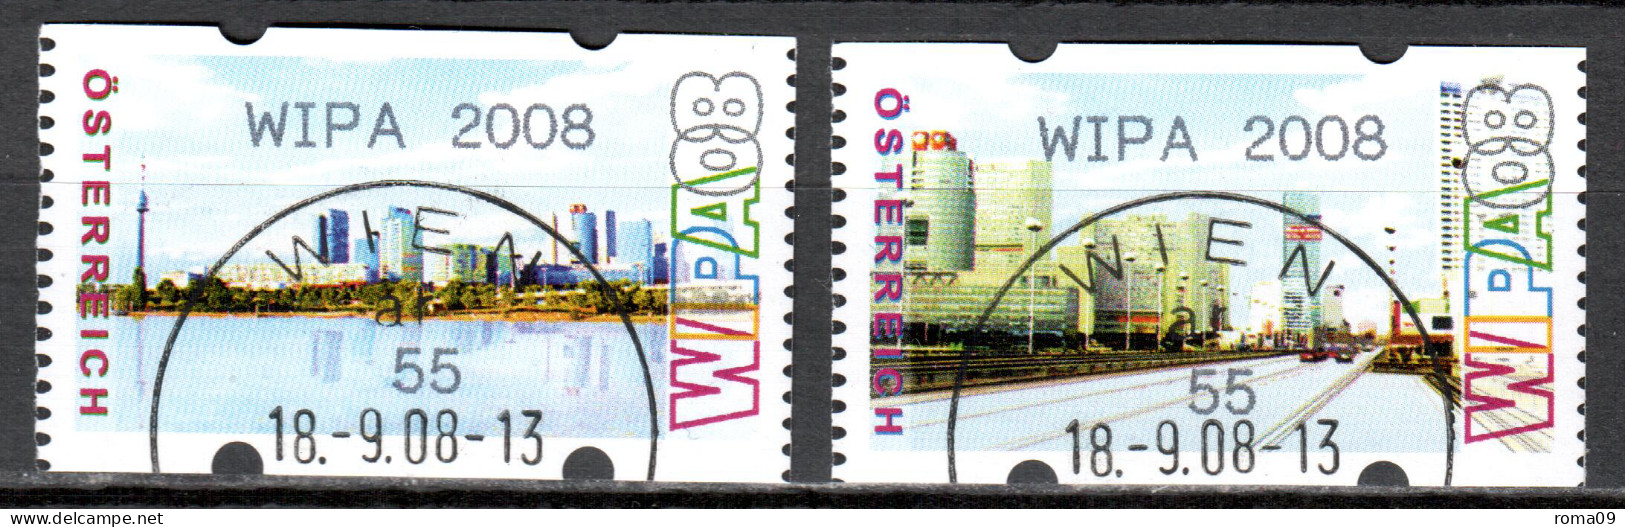 MiNr. ATM 12 + 13  C, Eindruck: „WIPA 2008“; Intern. Briefmarkenausstellung WIPA 2008, Wien: Stadtansichten; Gest. - Vignette [ATM]